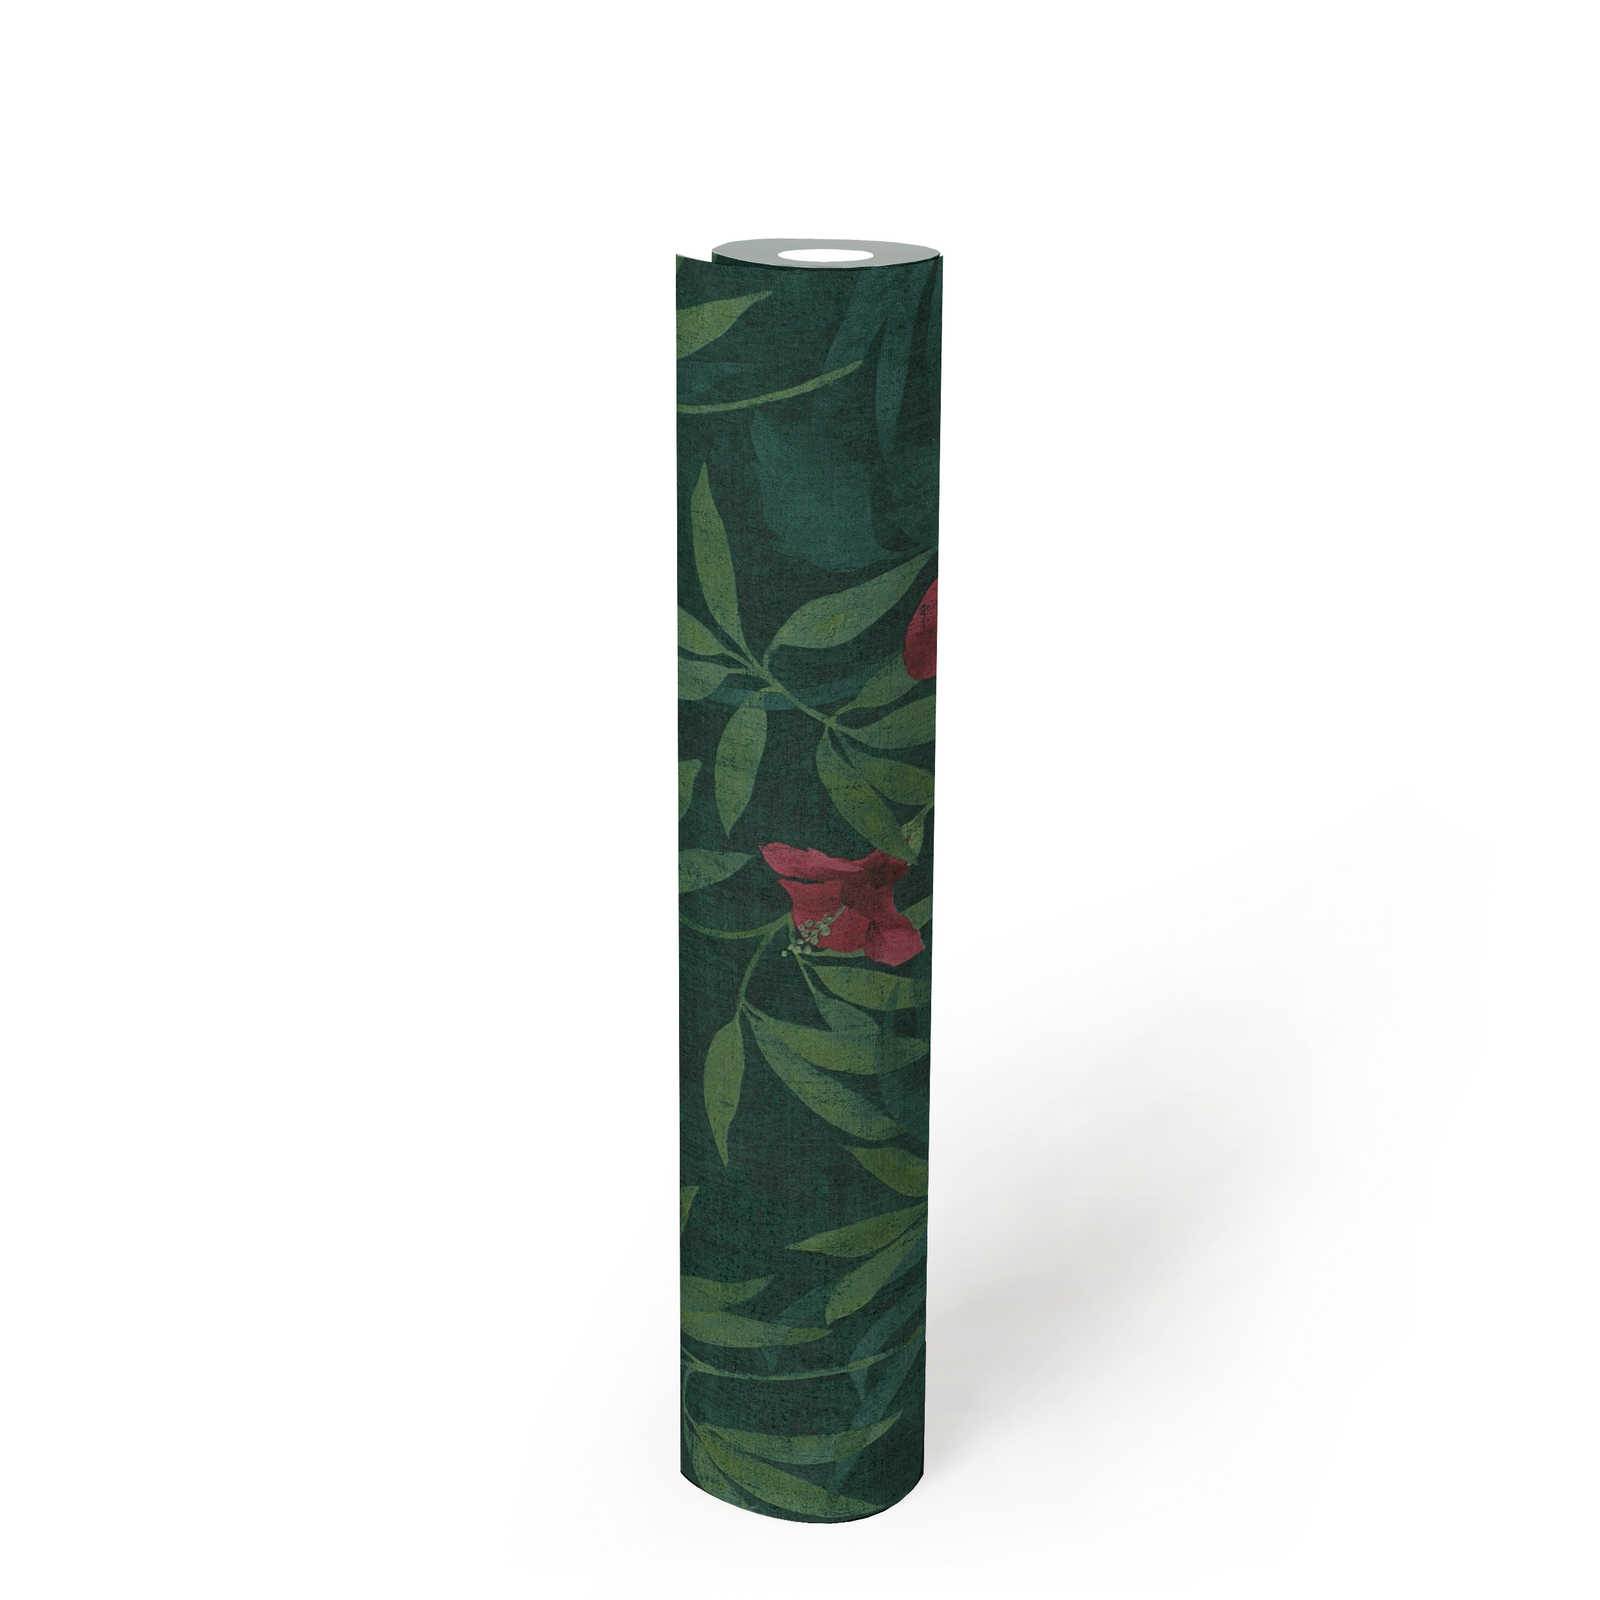             Jungle papier peint jungle verte & fleurs d'hibiscus - vert, rouge
        